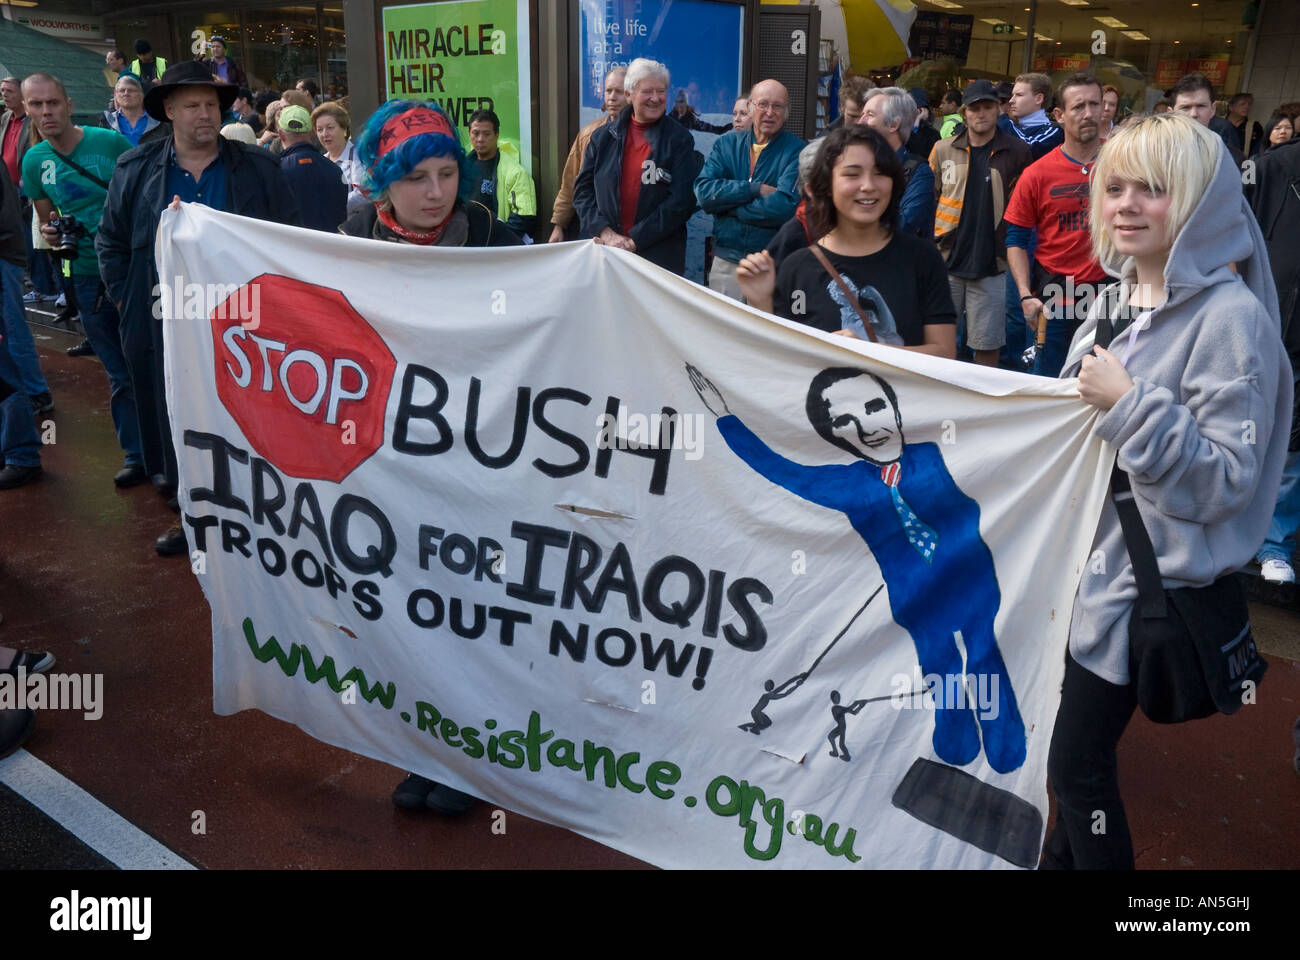 Manifestanti anti anti anti-Bush a una marcia di protesta durante il vertice APEC, Sydney, Australia, attivisti slogan di protesta. Fermare la protesta di Bush. Foto Stock